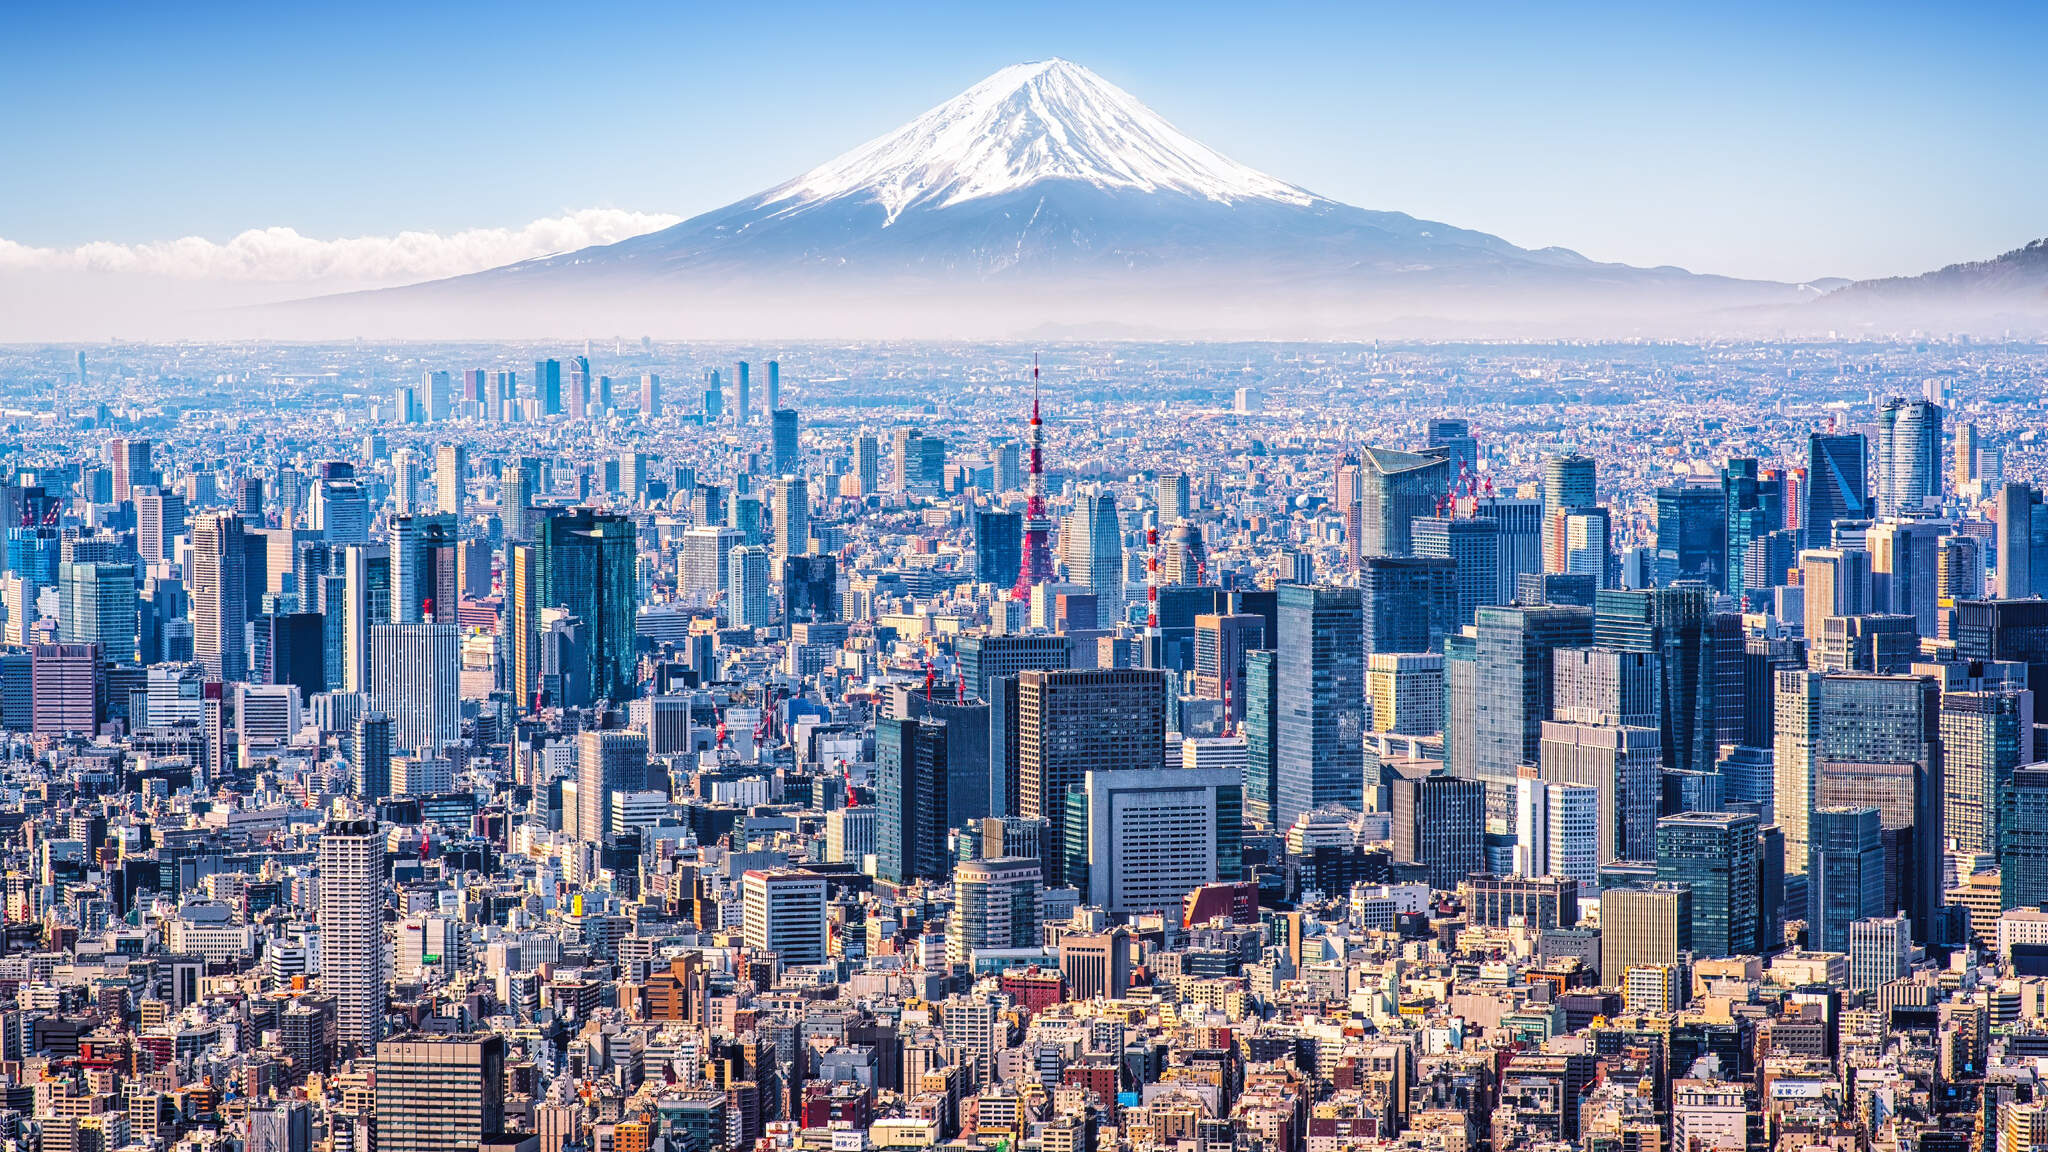 Tokio, de economische metropool aan de voet van de berg Fuji.